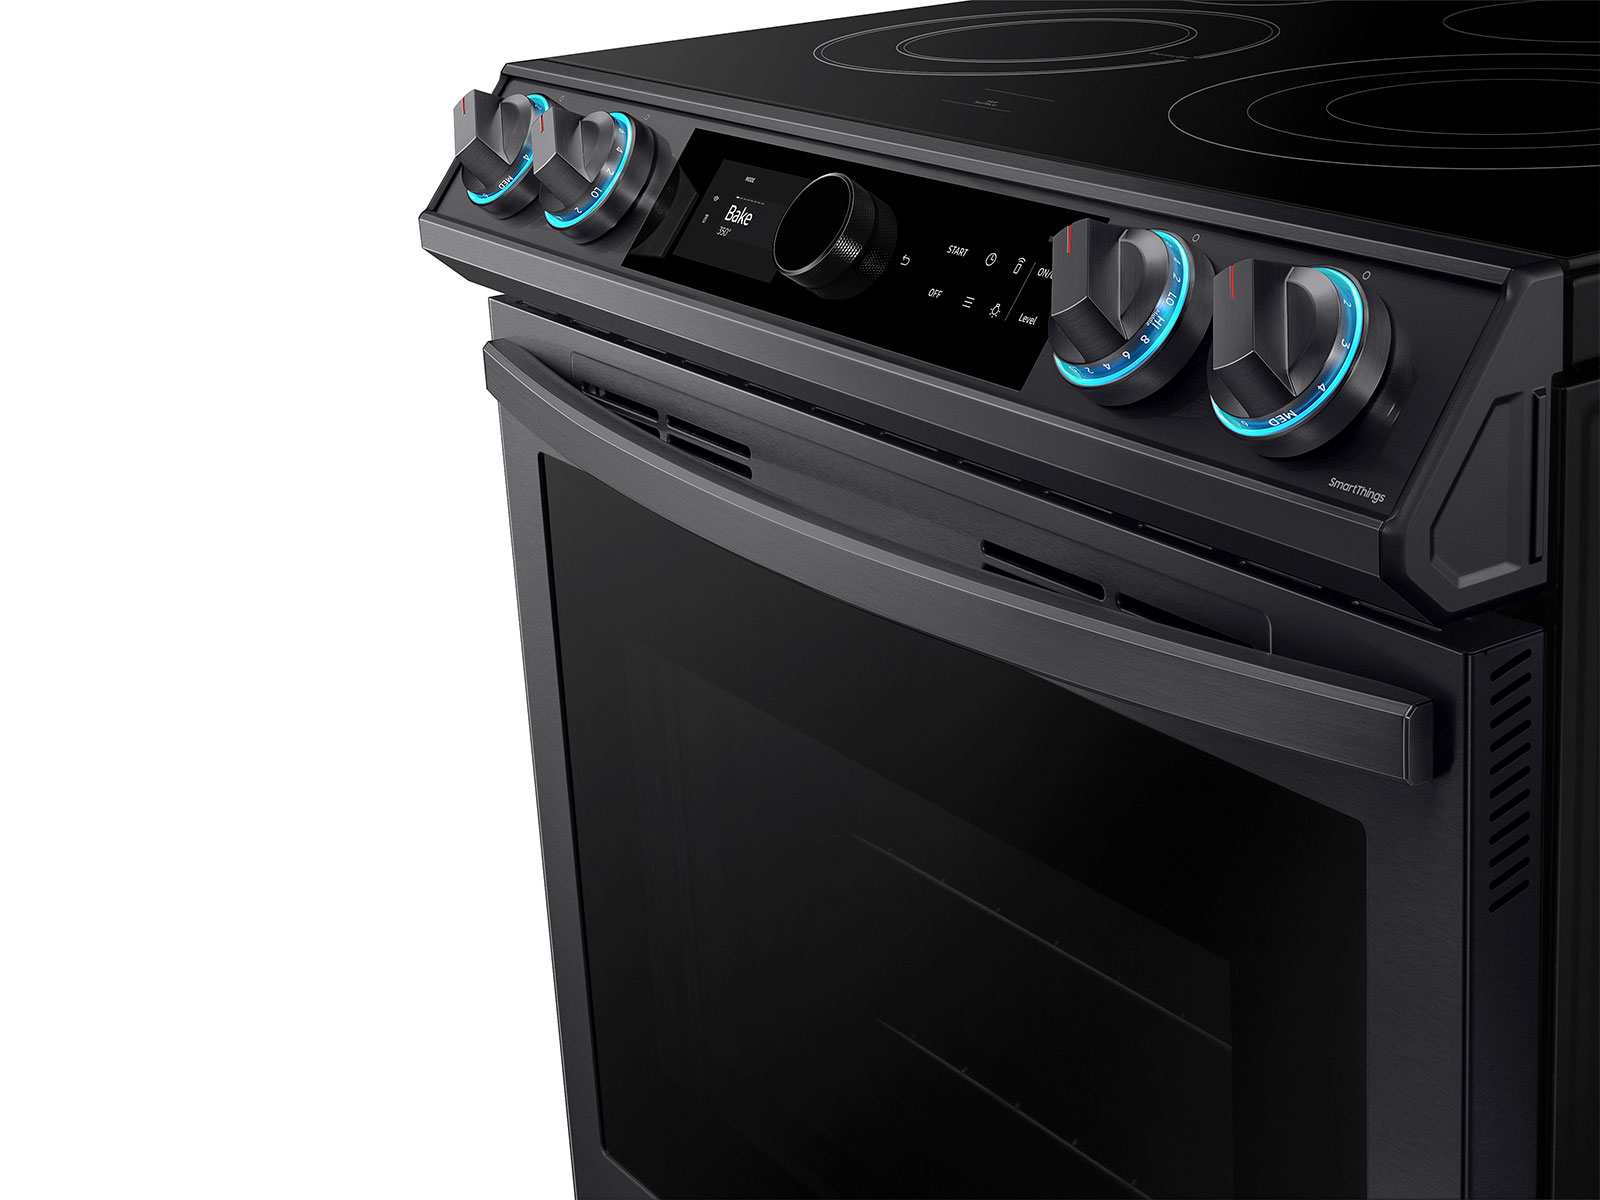 Aprende cómo instalar un horno eléctrico de forma segura